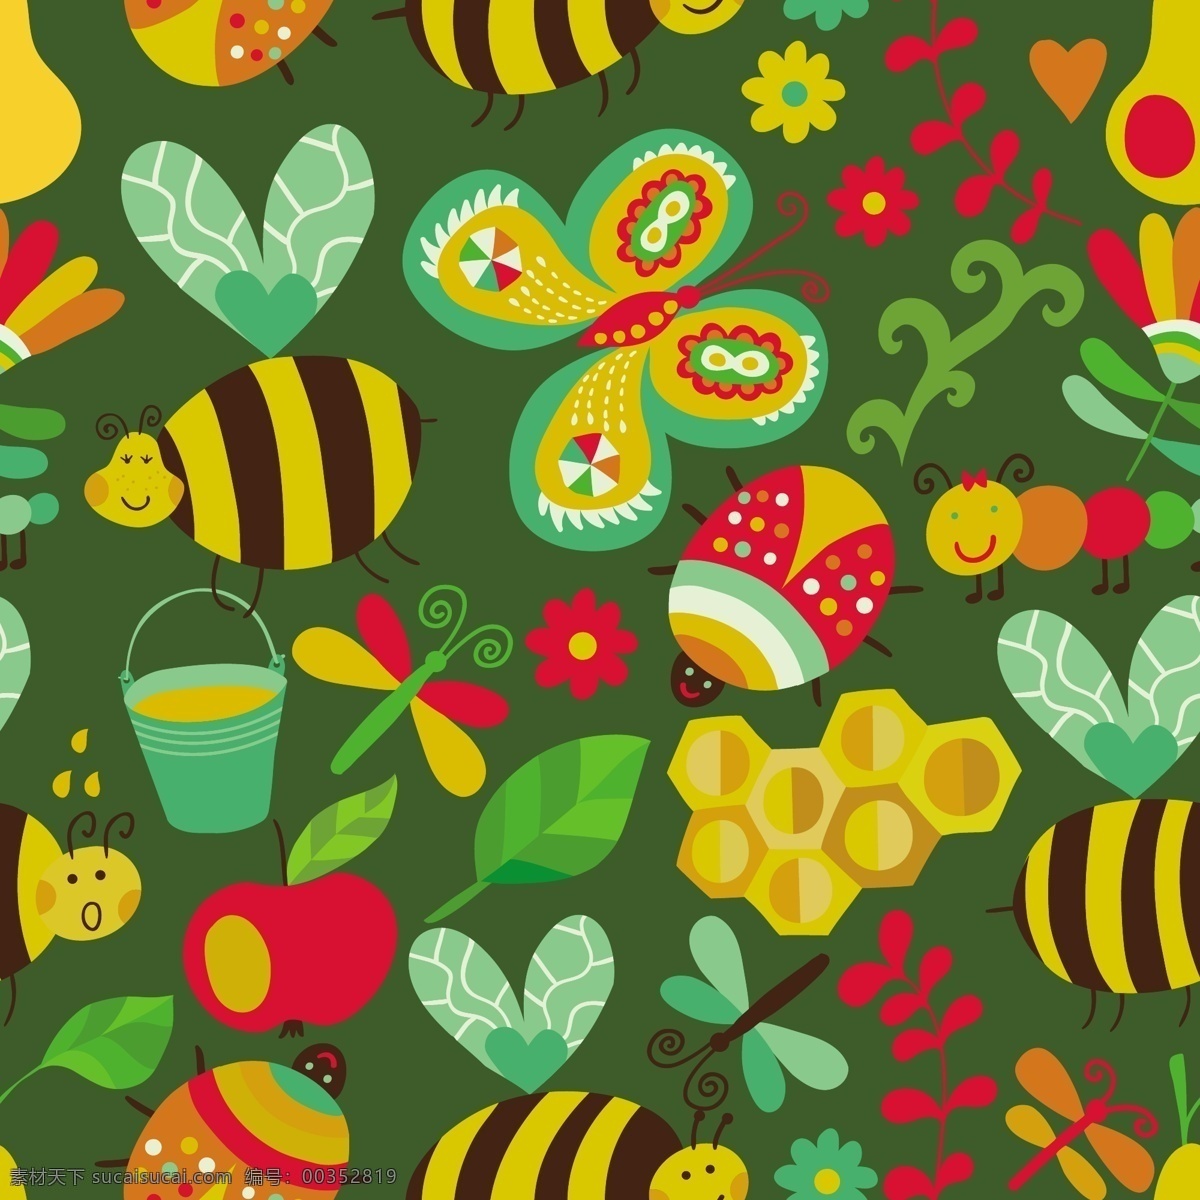 矢量 无缝 花卉 图案 组成 honeyb 夏天 矢量图 花纹花边